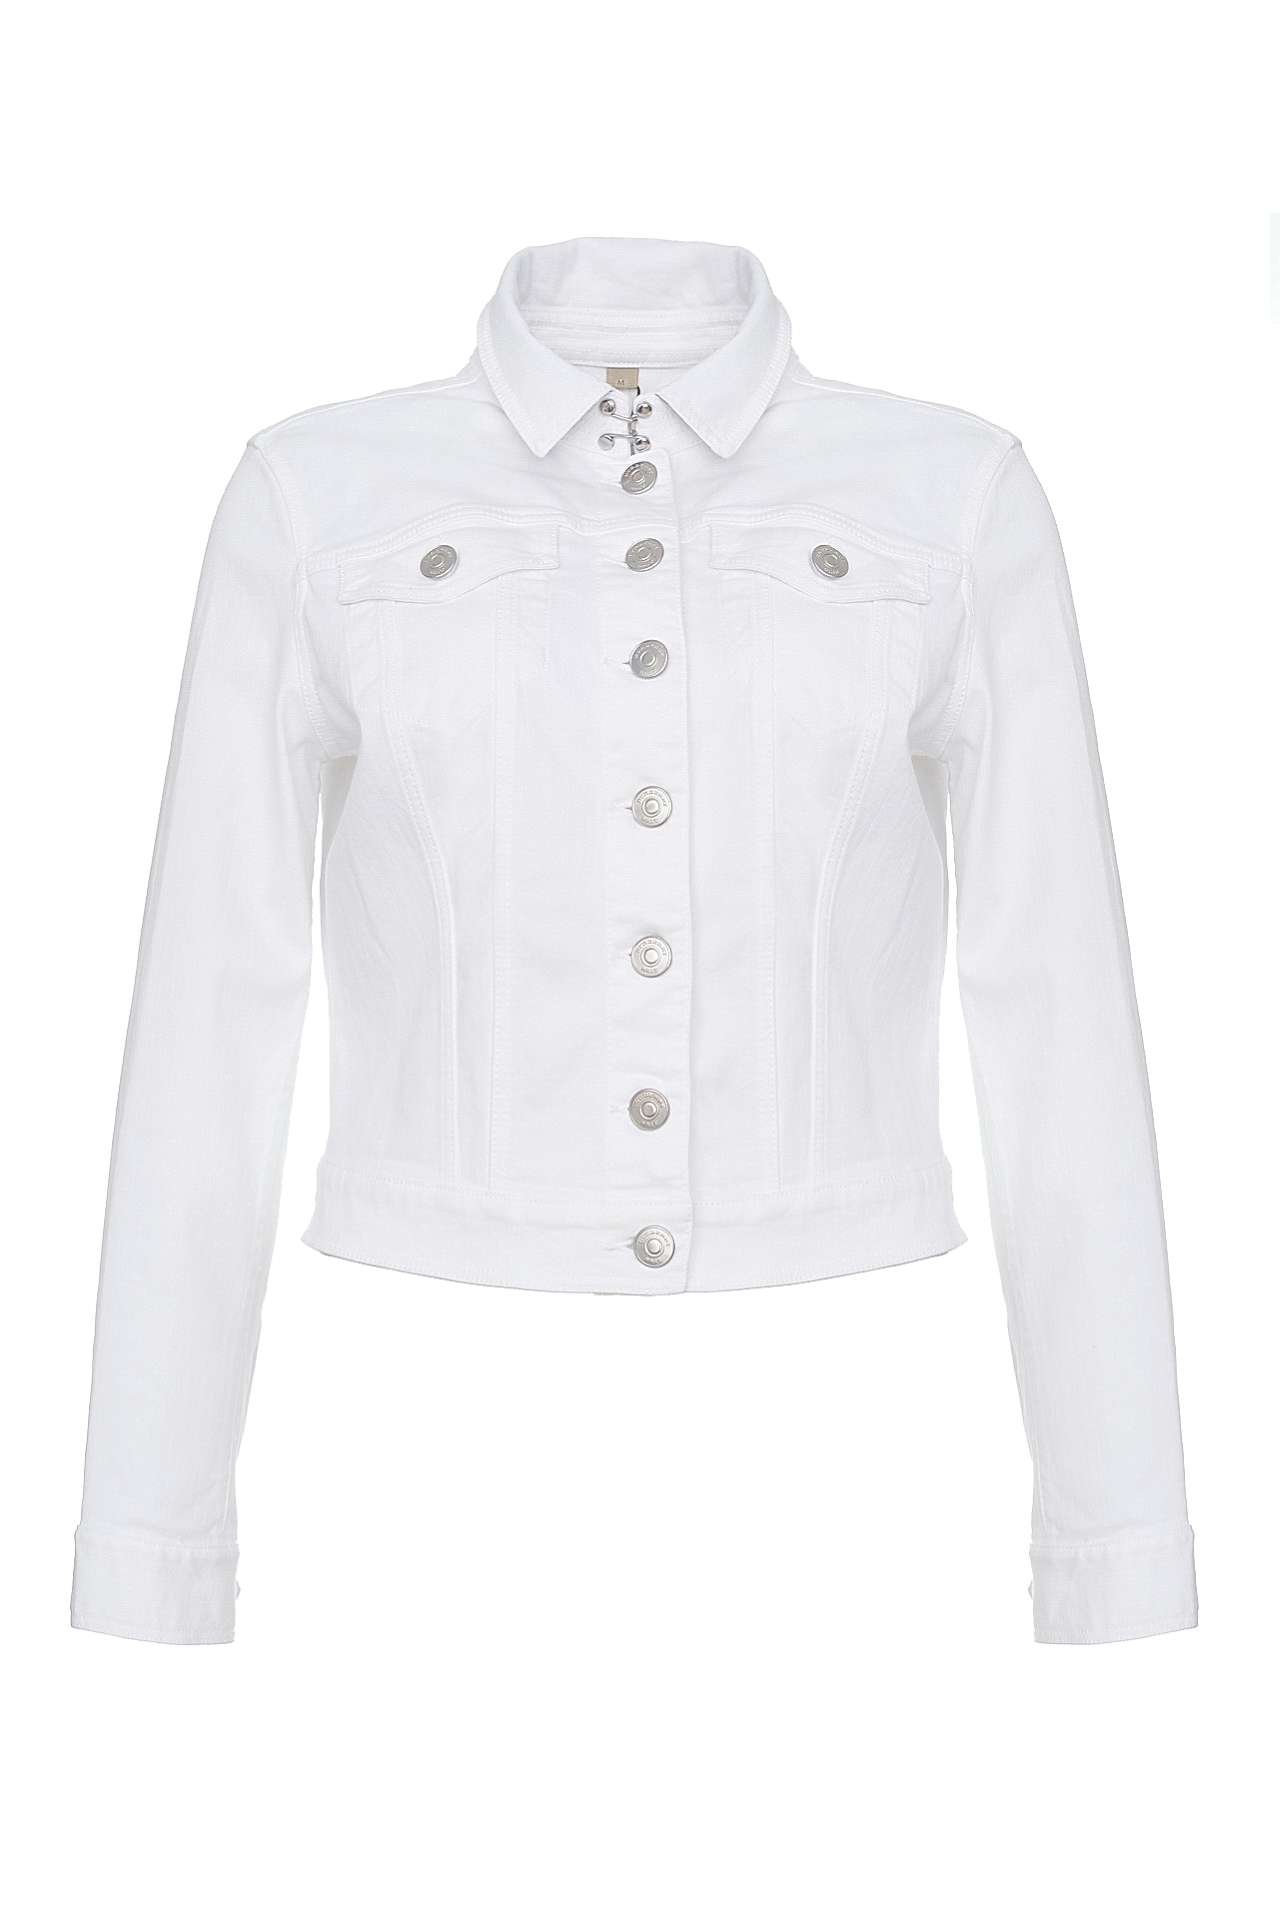 Одежда женская Куртка BURBERRY (3954356/15.2). Купить за 20650 руб.